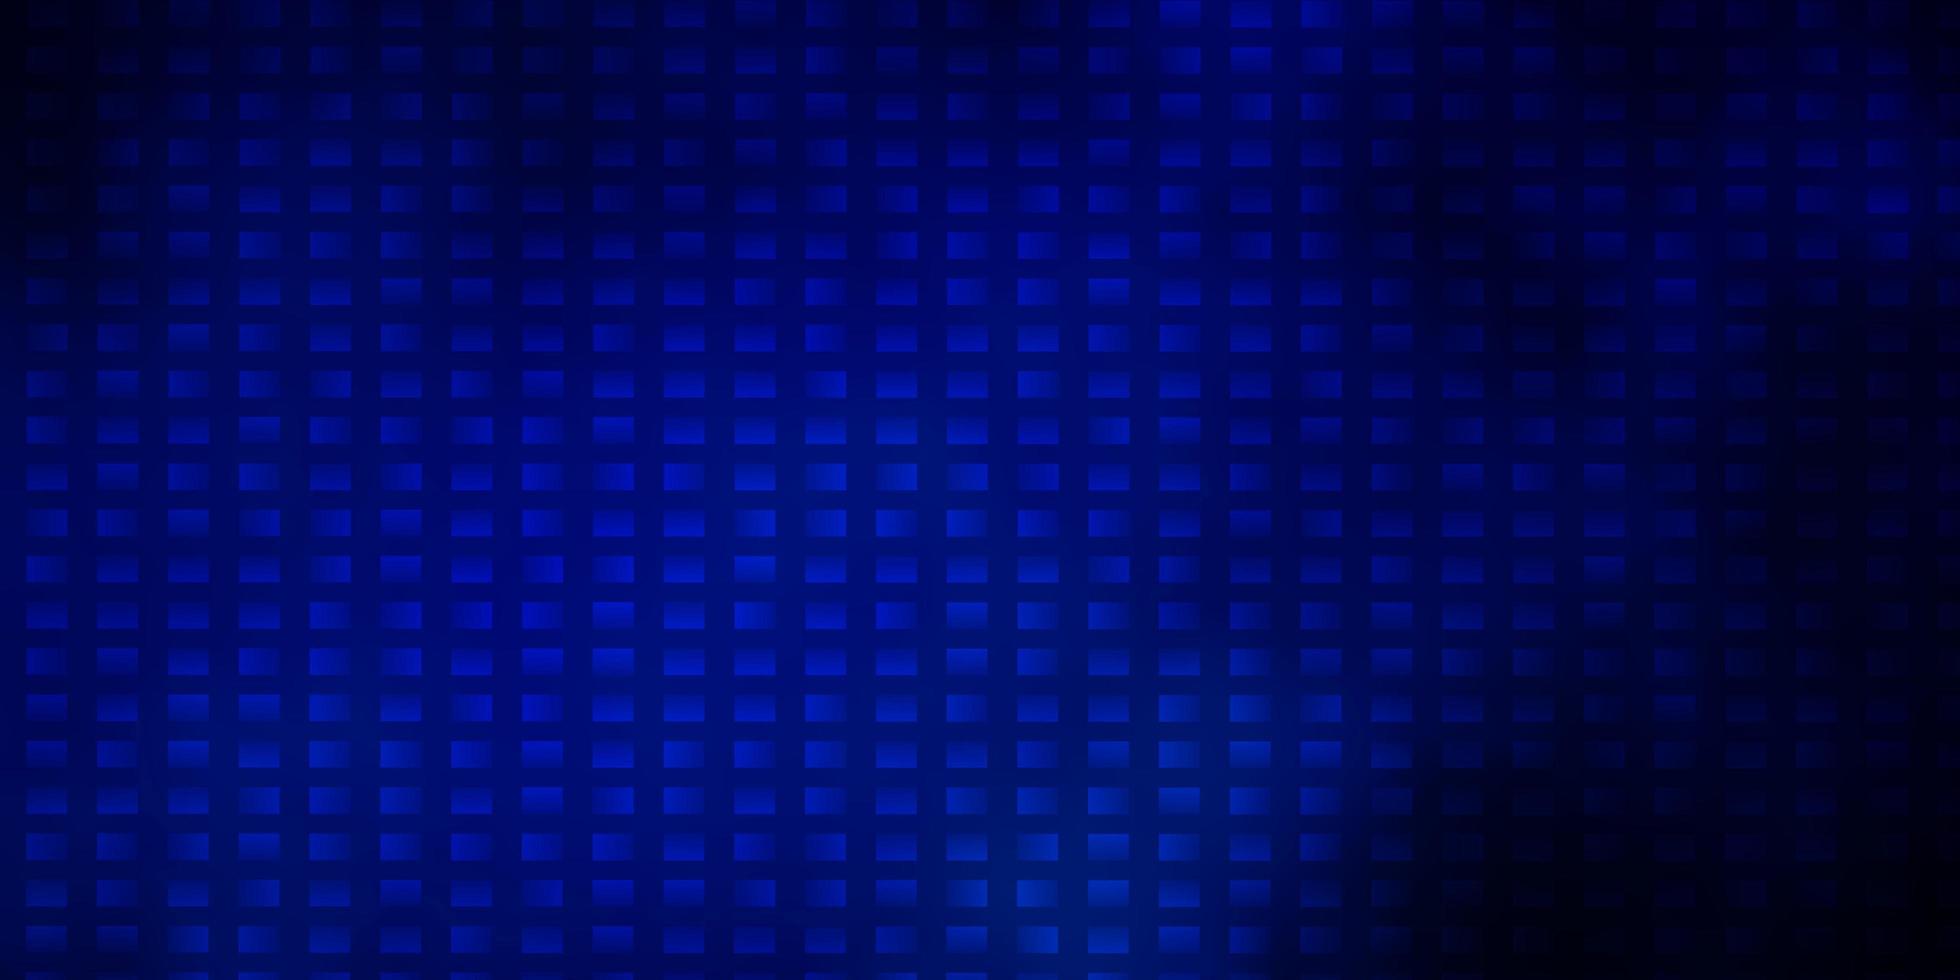 modelo de vetor azul escuro com retângulos